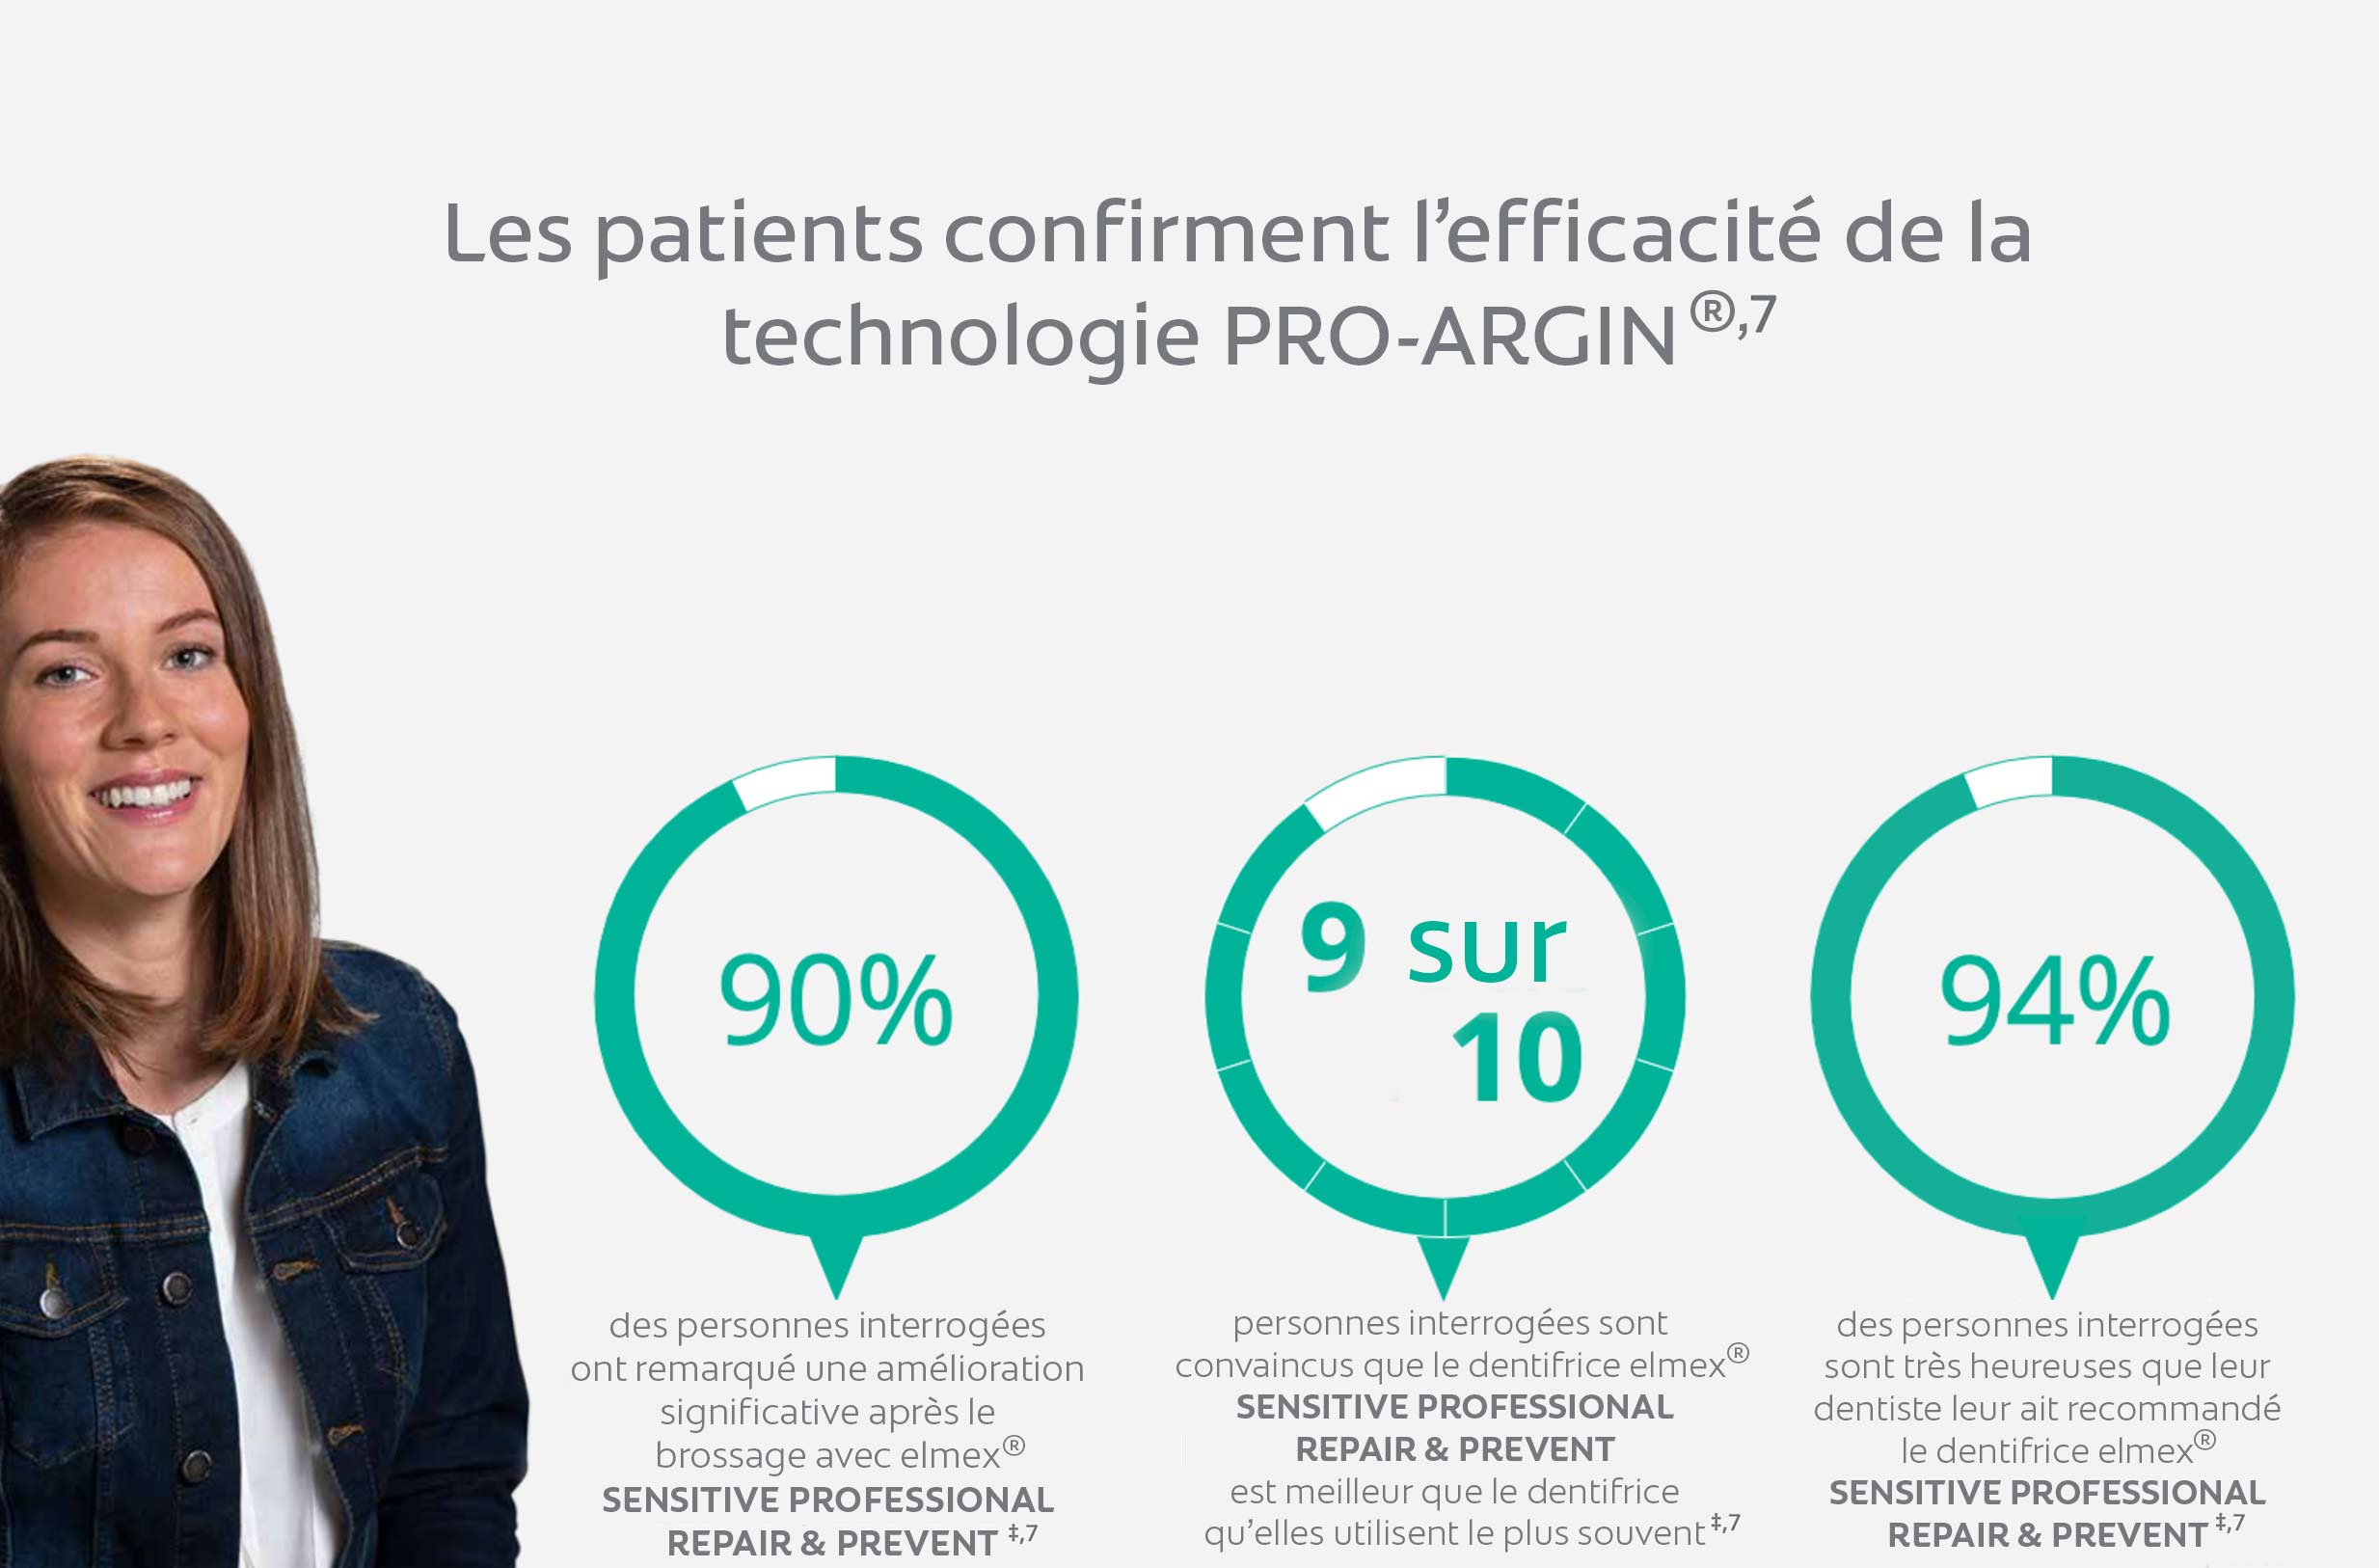 Les patients confirment l’efficacité de la technologie PRO-ARGIN®